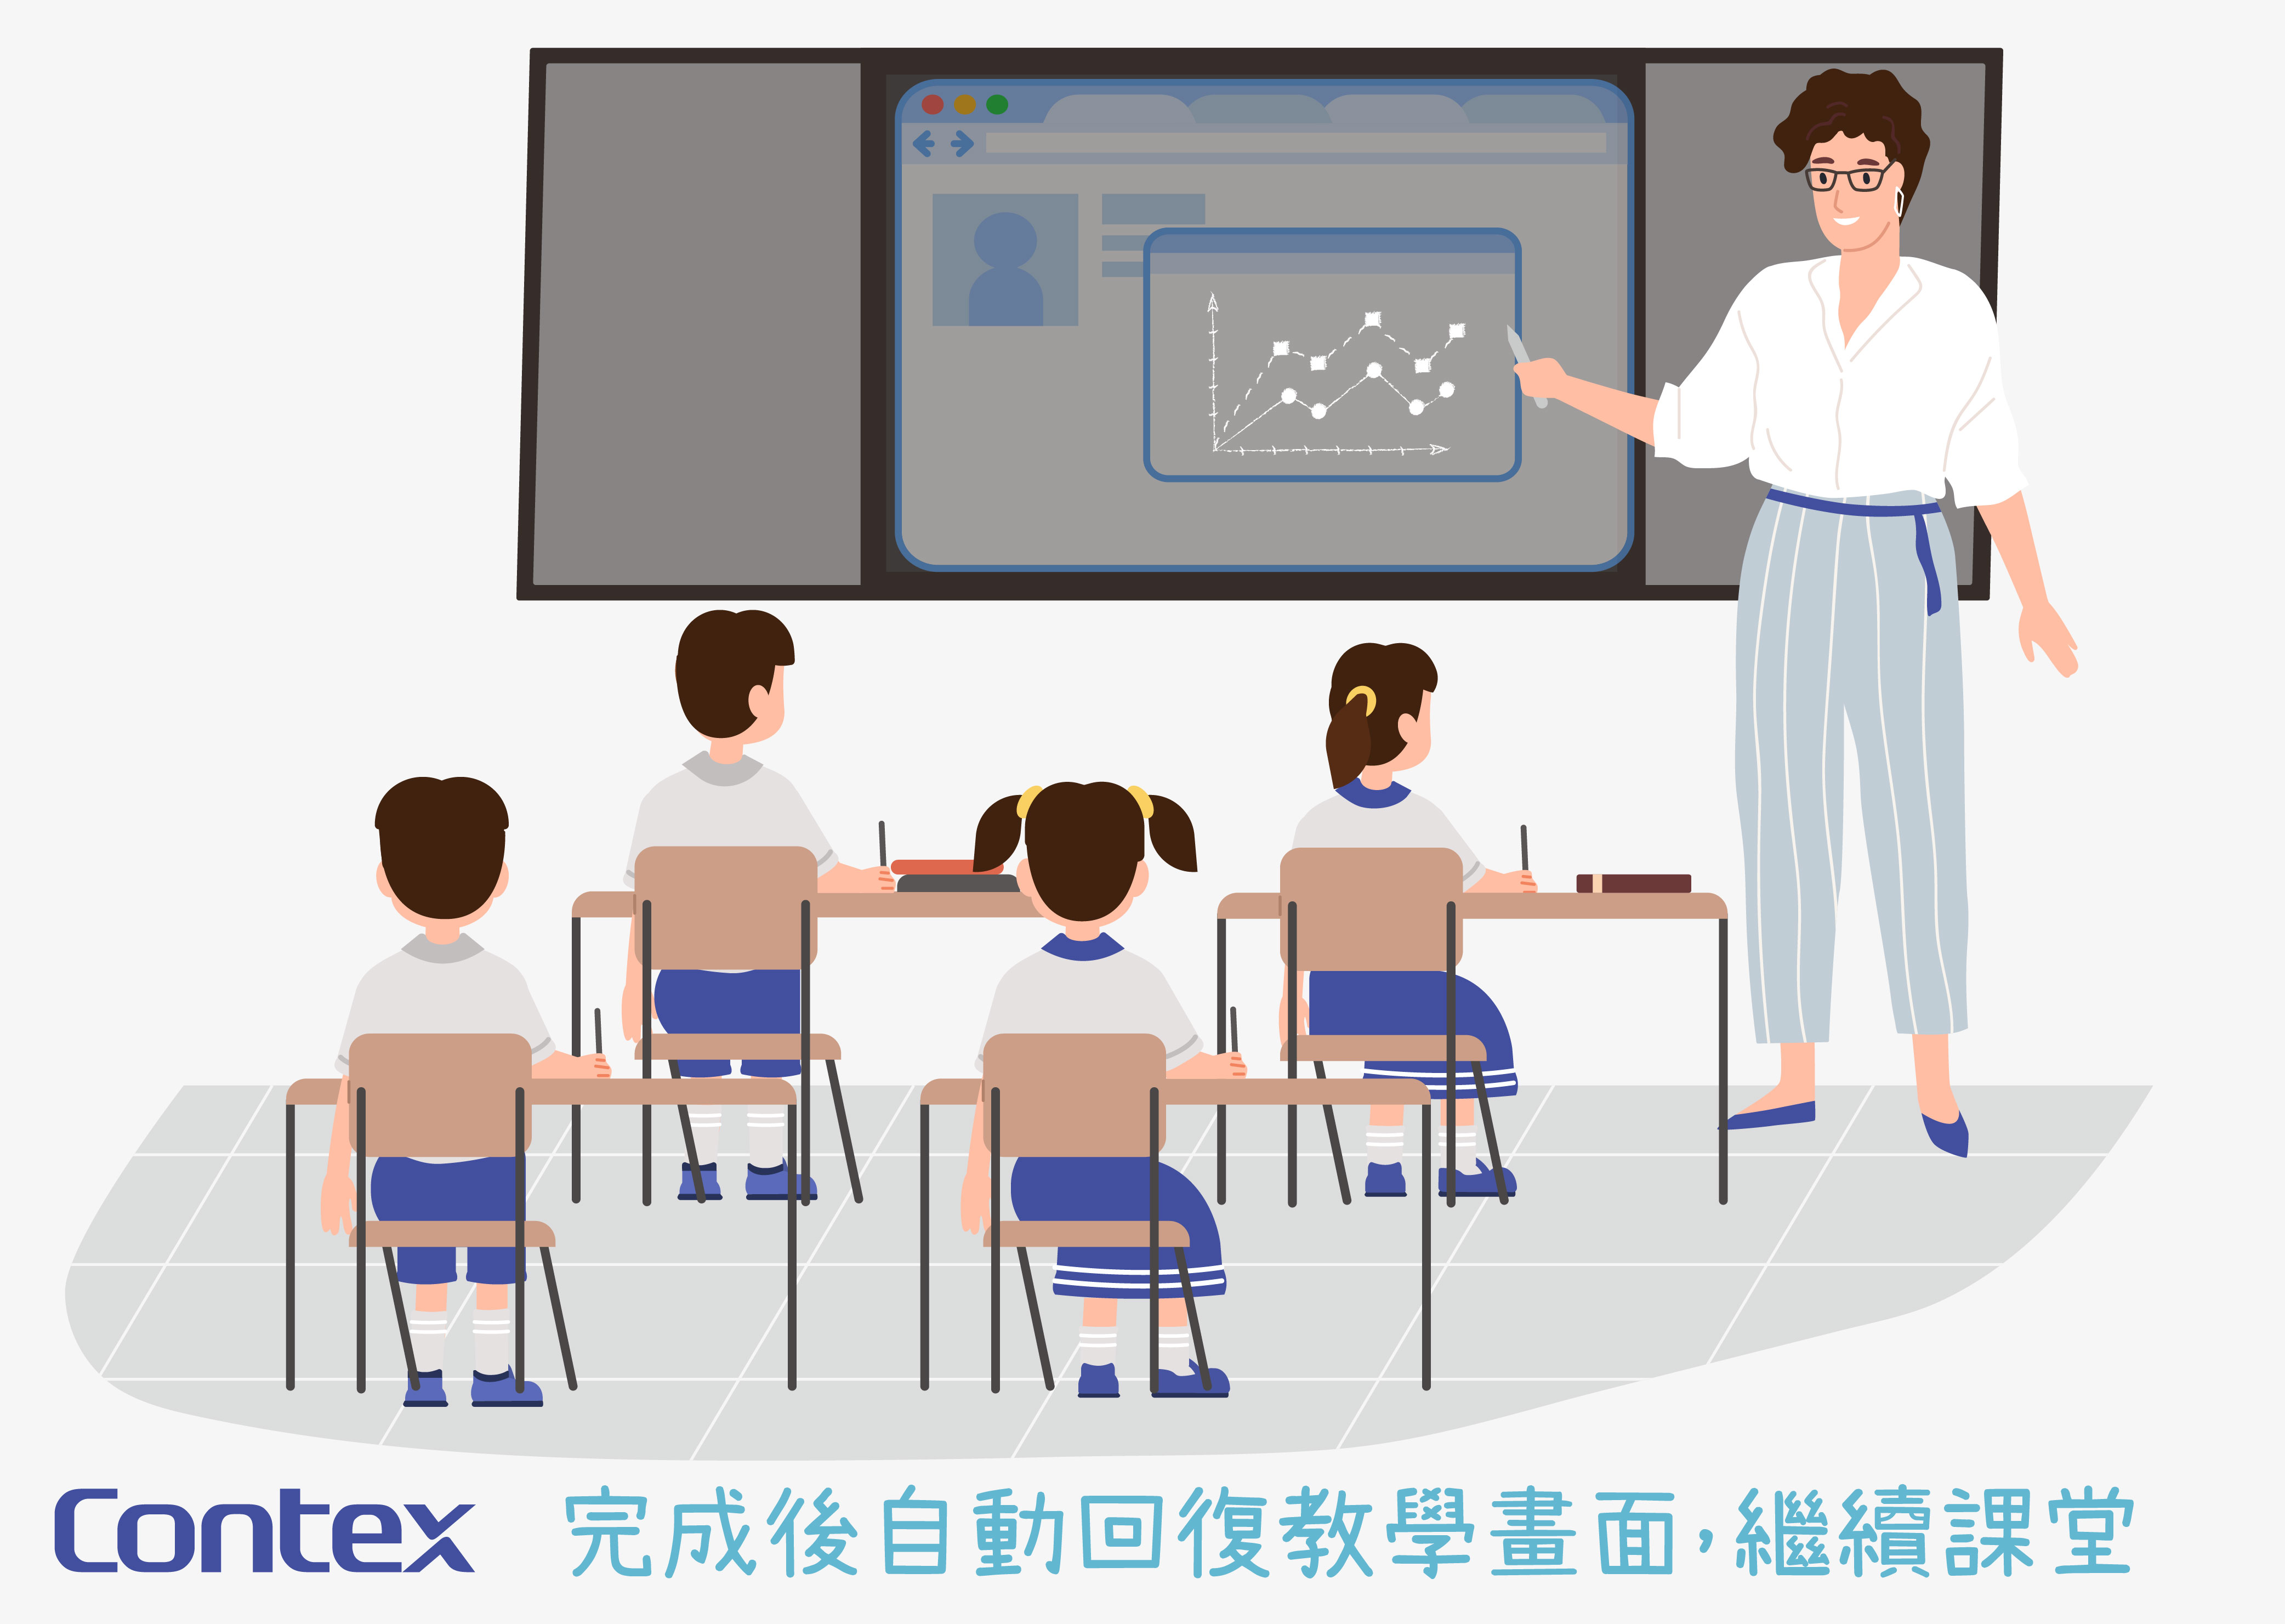 透過Contex雲端發佈系統直播，學生可於課室的電子屏幕觀看活動直播，在維持社交距離措施時，亦能同步參與，加強校園凝聚力。